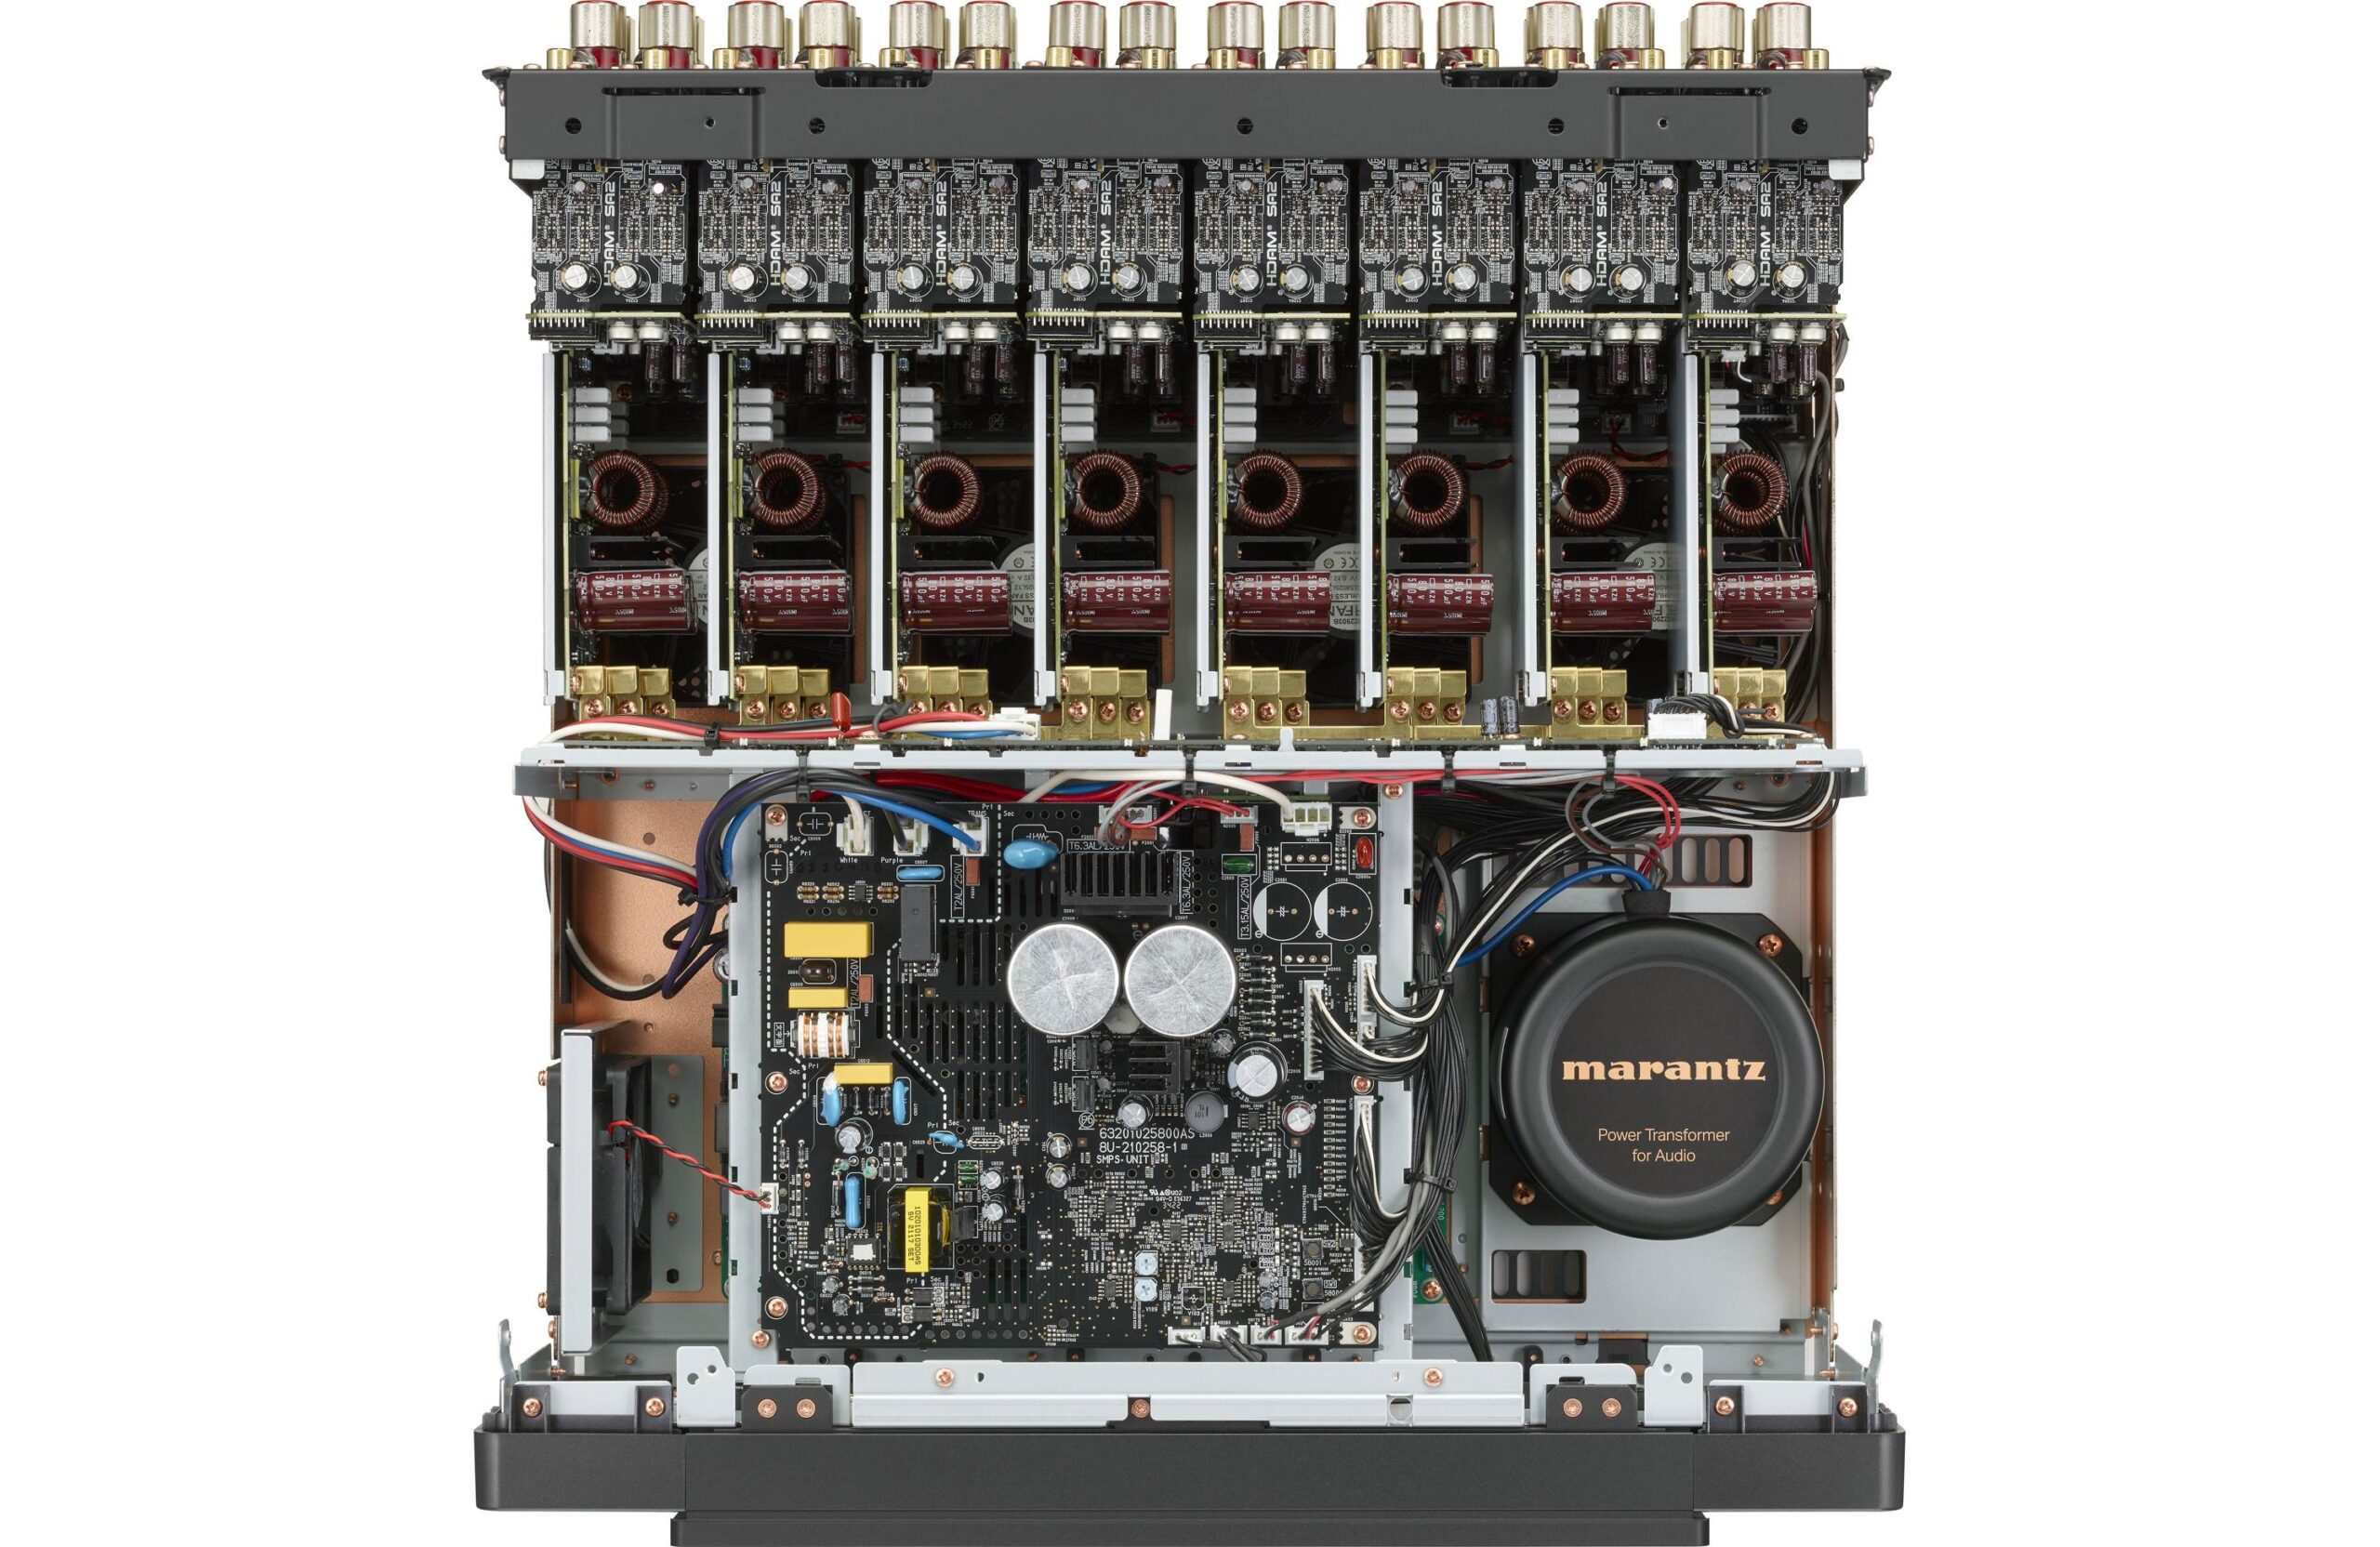 Marantz AMP 10 Multi-Channel Amplifier